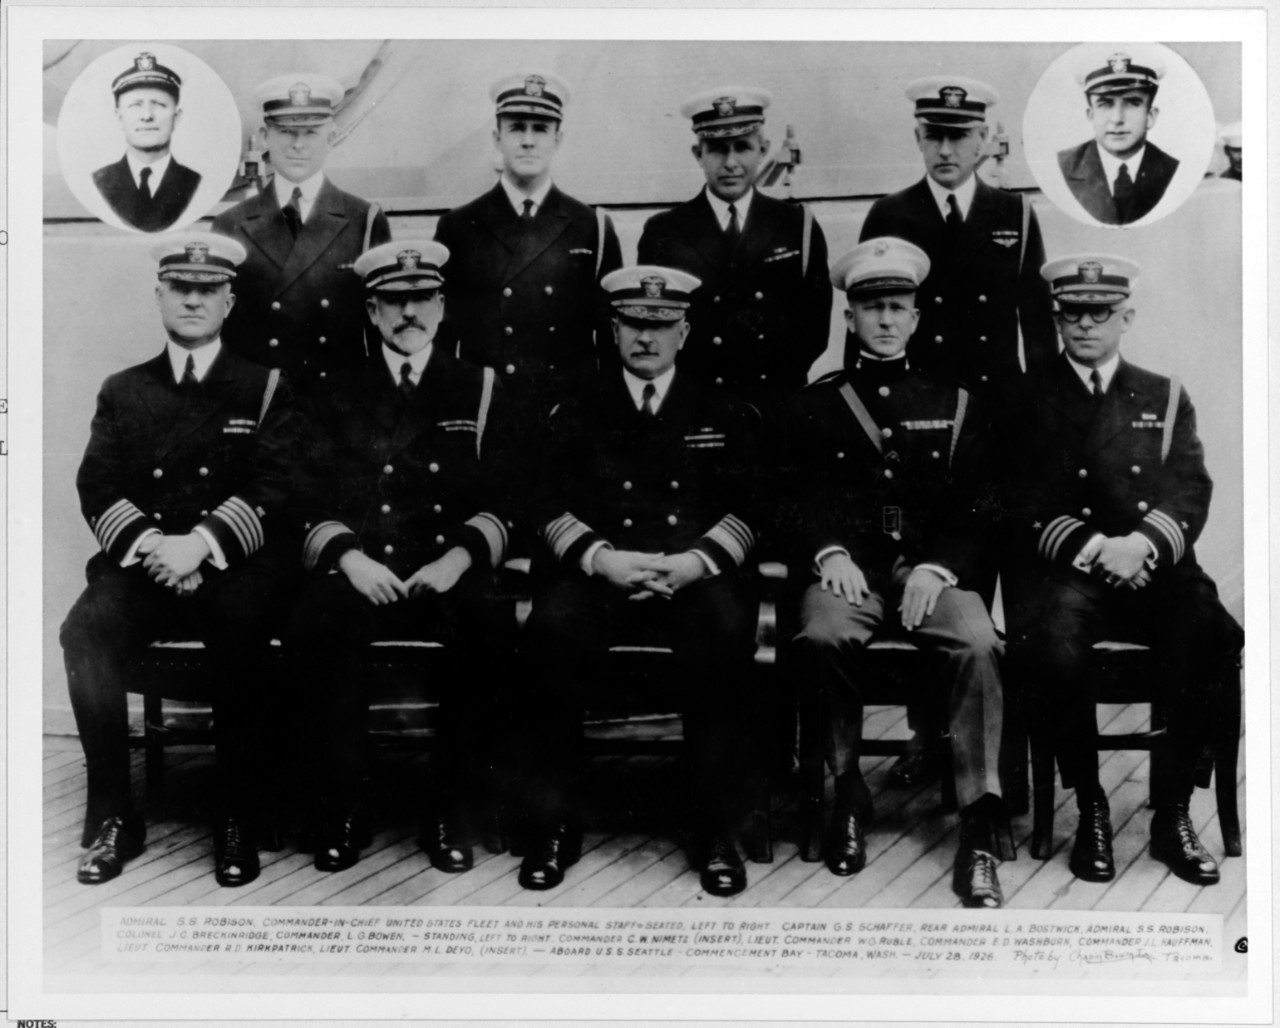 Staff of Admiral Robison, CINCUSFLT, 1928